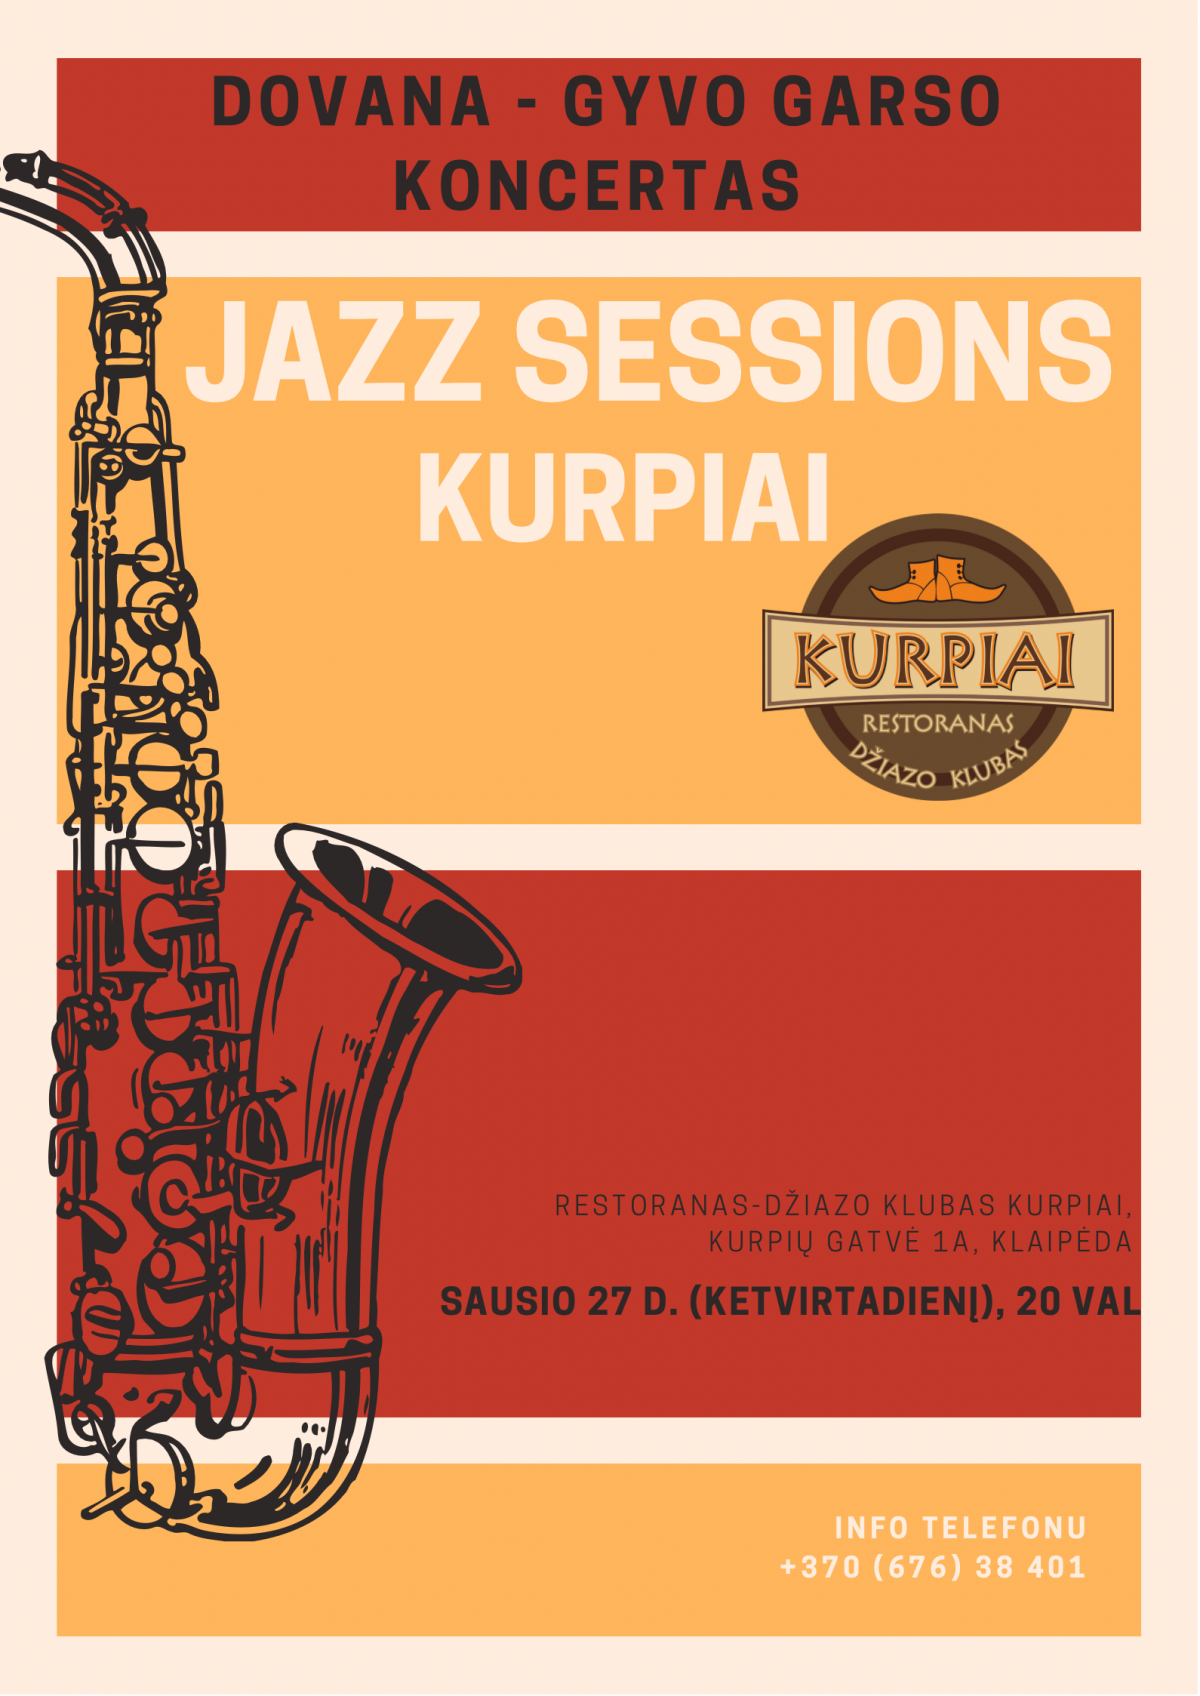 Gyvo garso koncertas Jazz Sessions Kurpiai